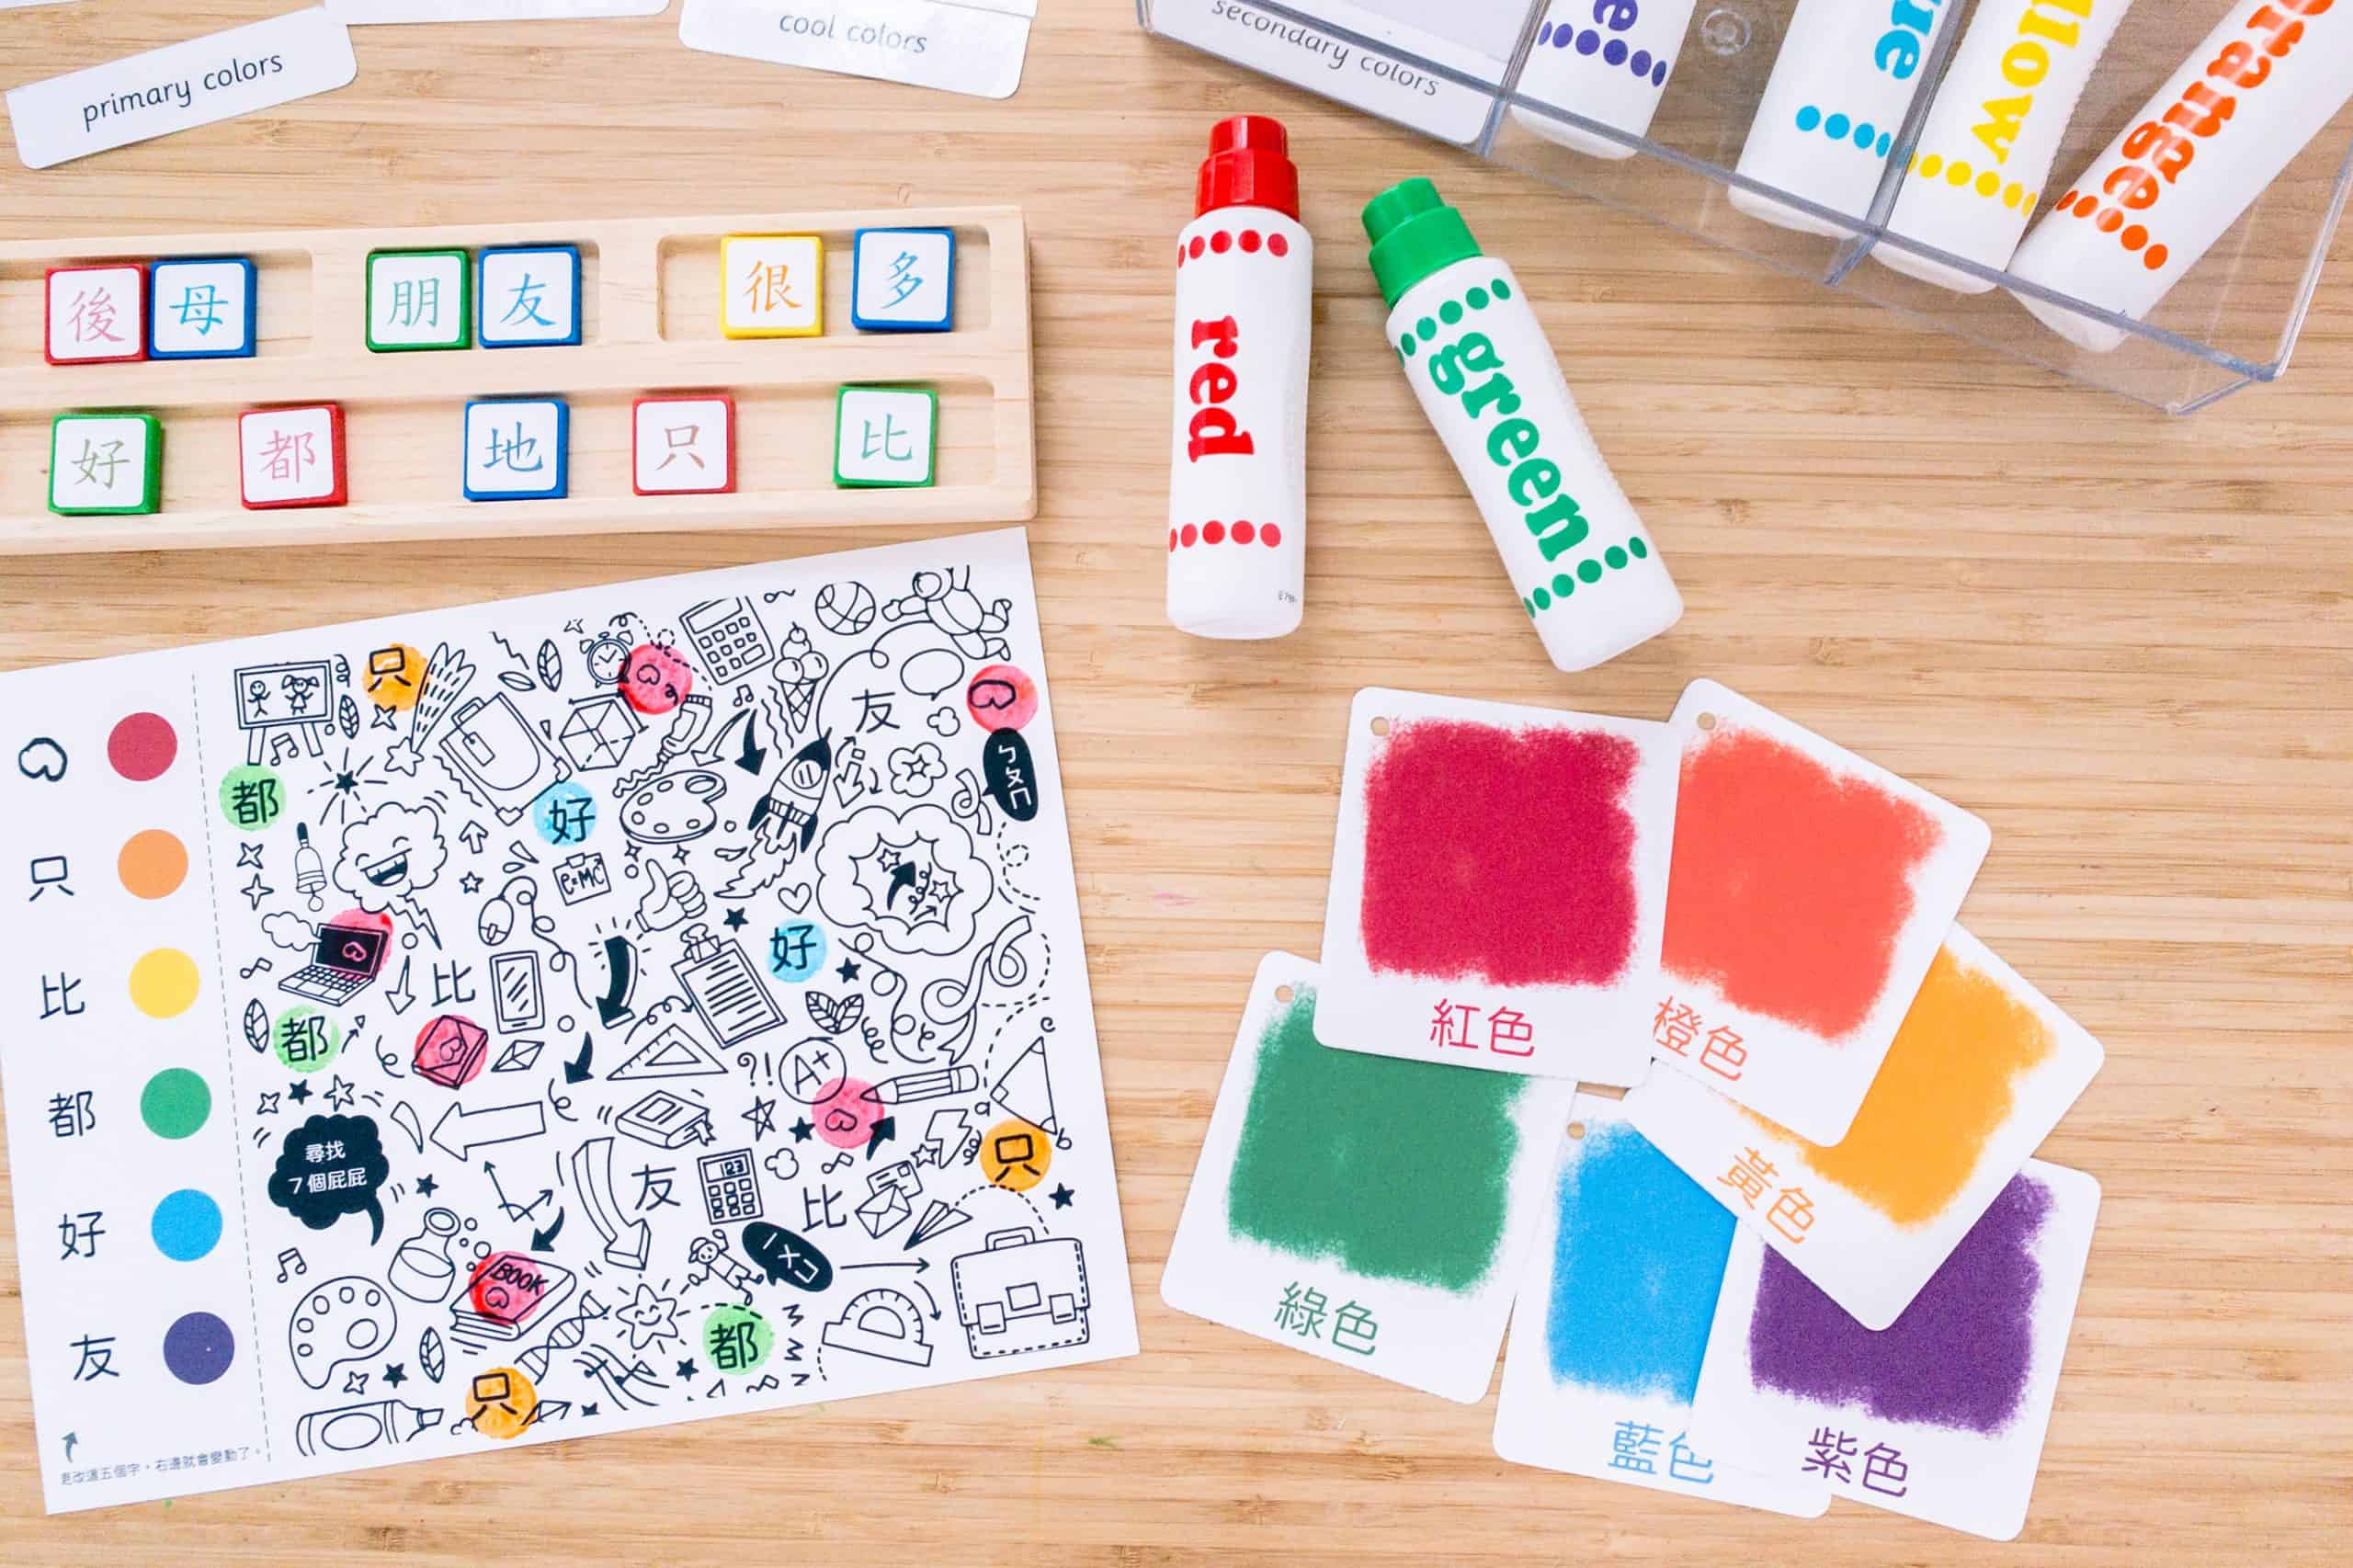 可編輯 中文彩色尋寶點字遊戲 點點筆